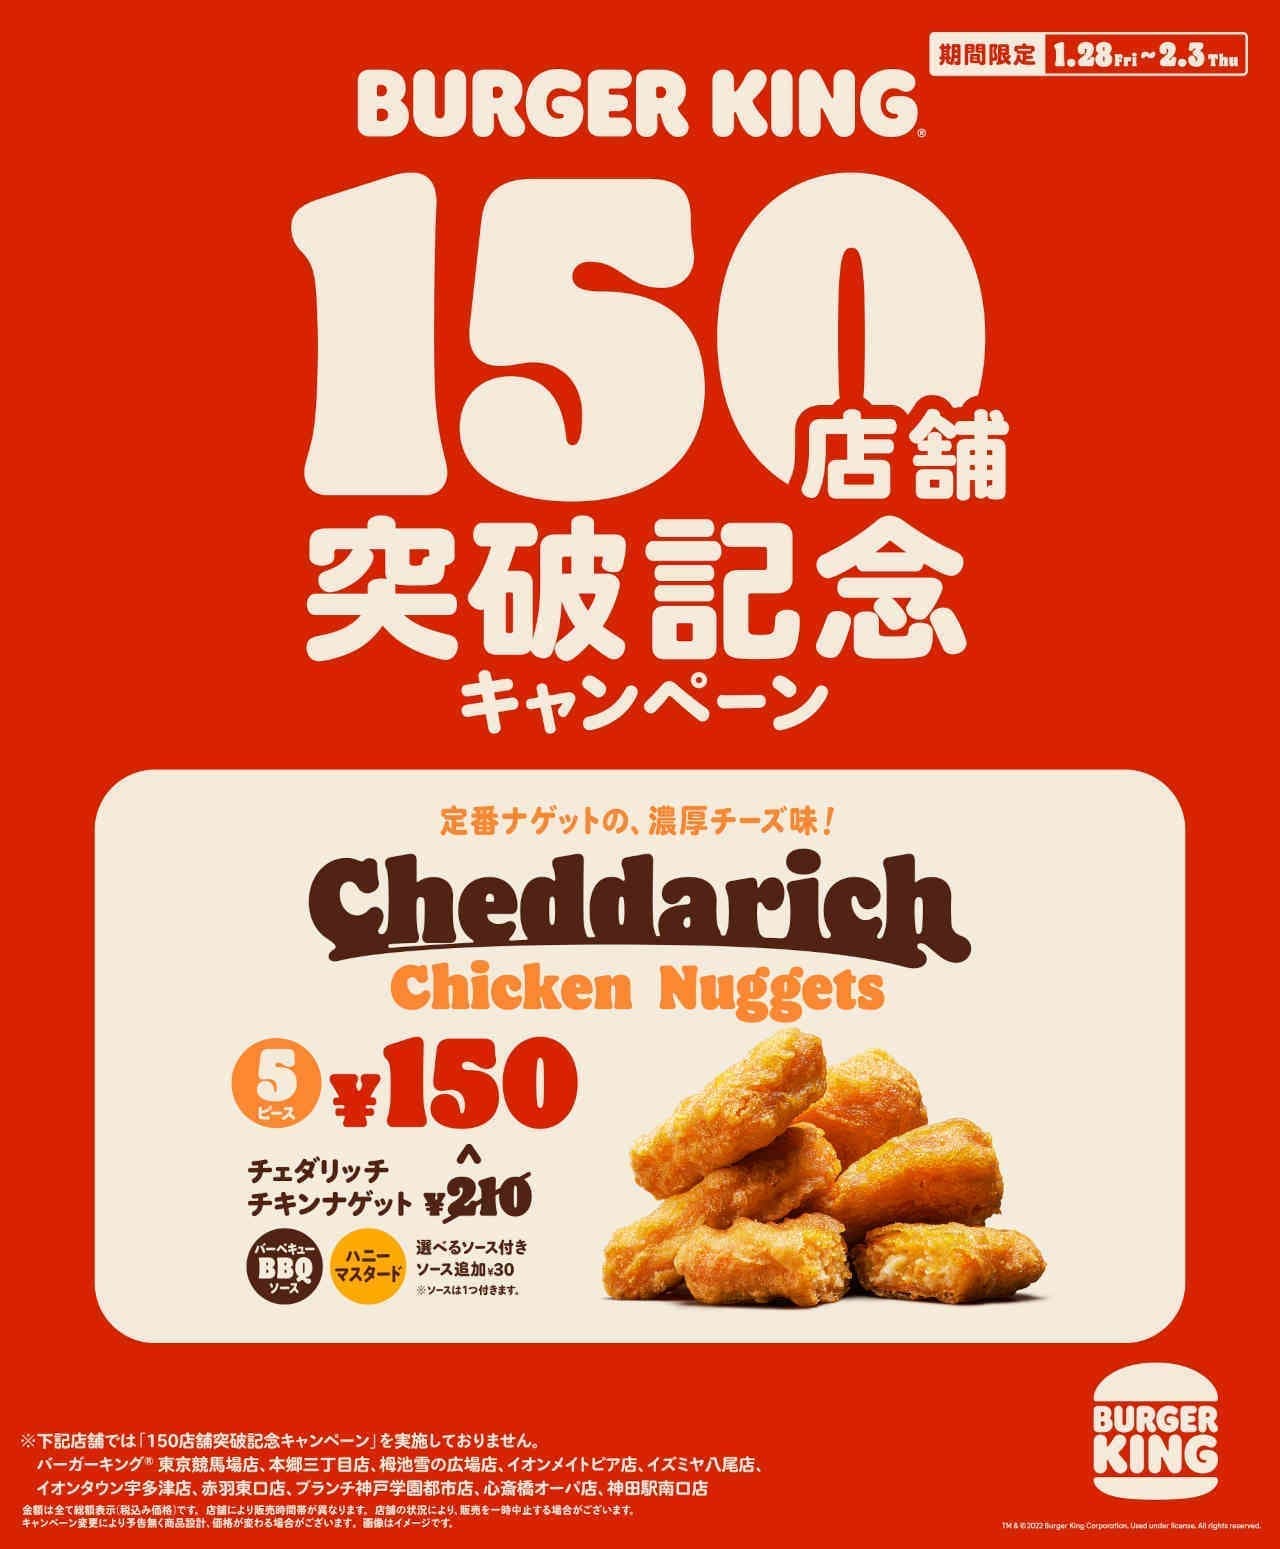 Burger King "Cheddar Rich Chicken Nuggets 5 Piece